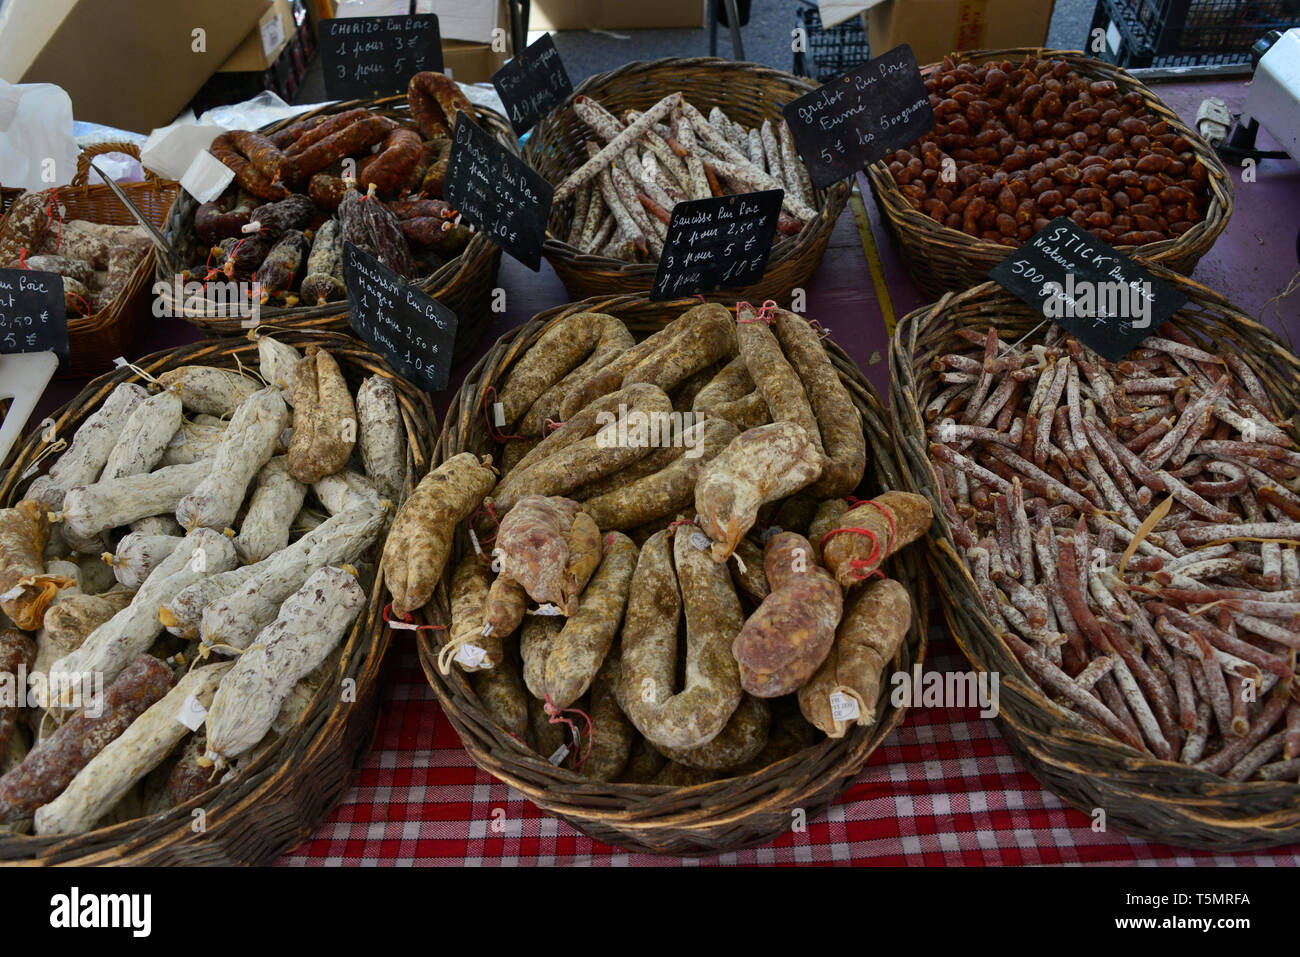 Vue en gros plan de divers français traditionnel saucisses à un marché, avec des prix en Euros écrit dans la craie sur les petits tableaux noirs. Banque D'Images